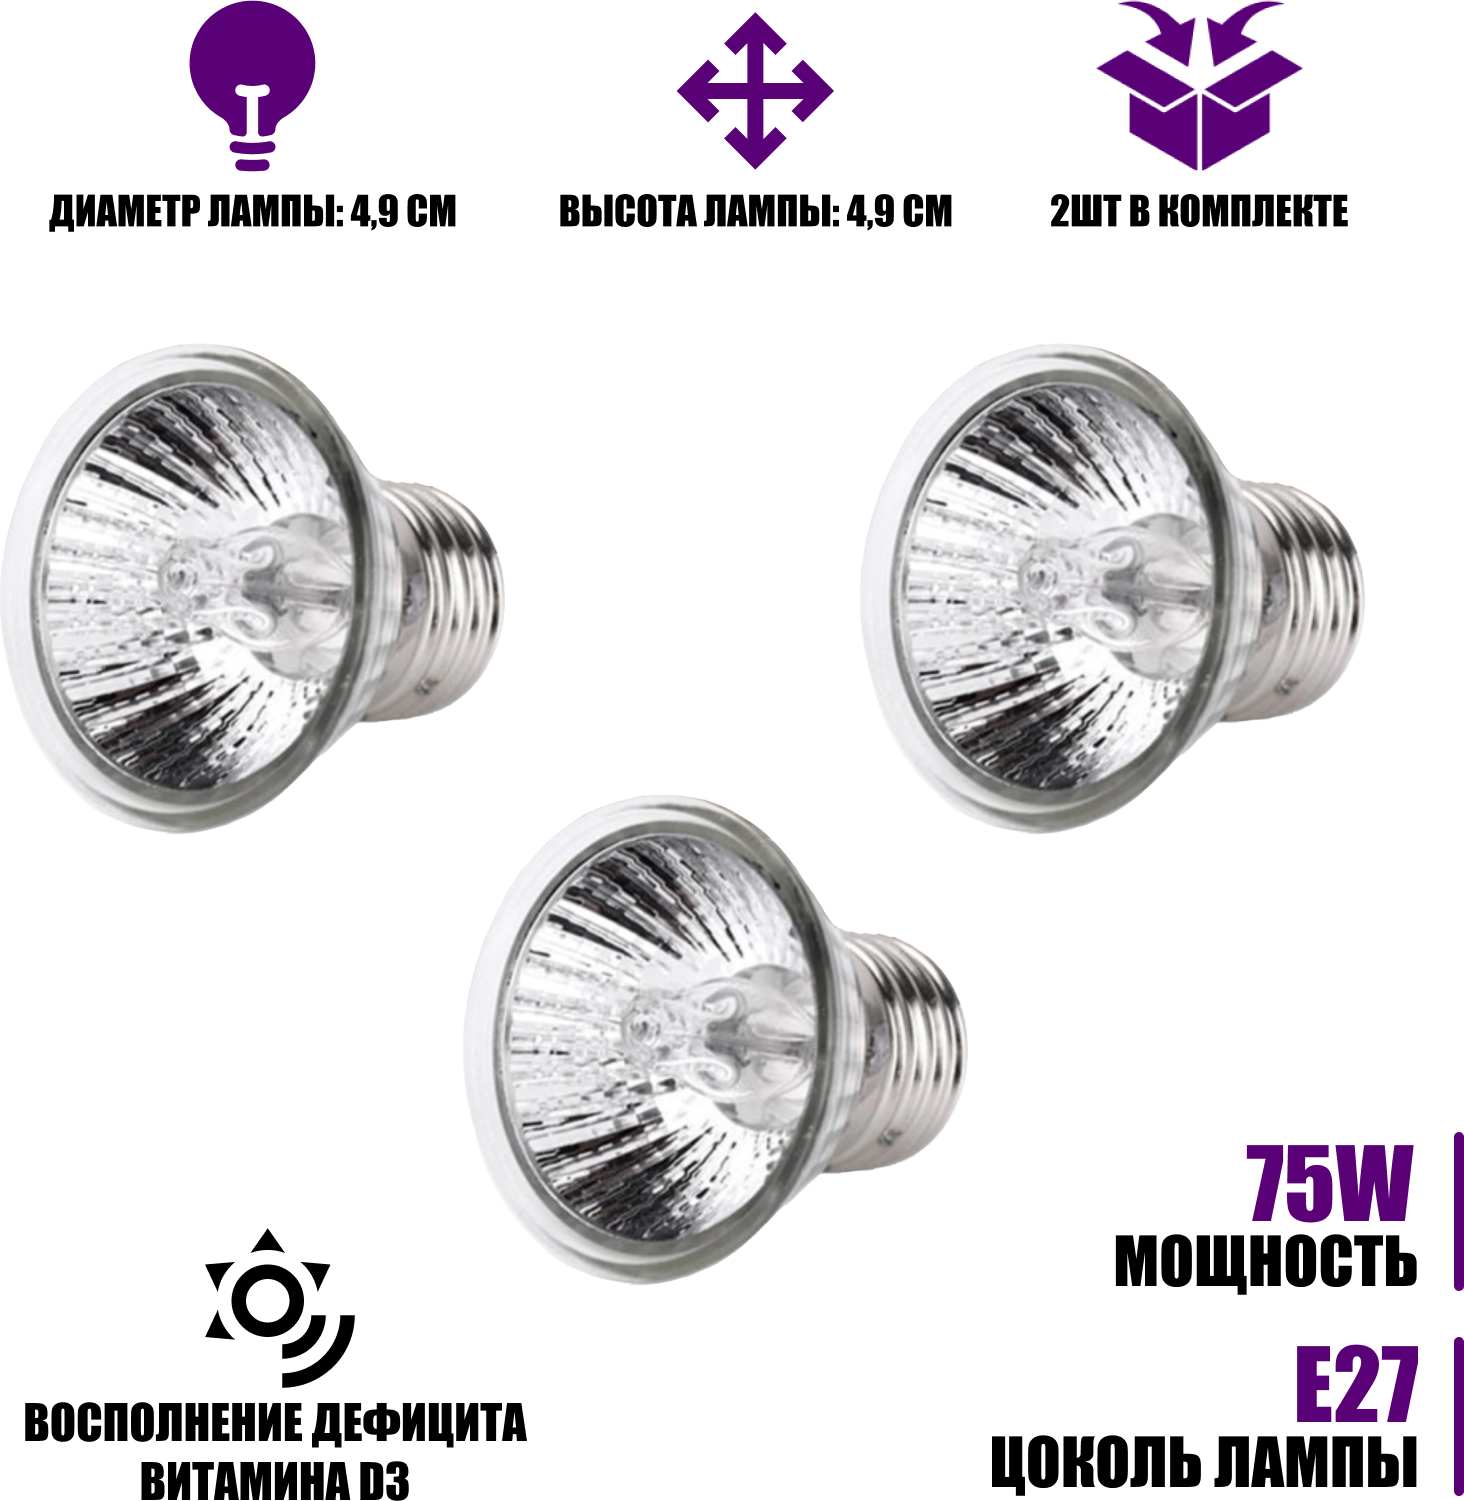 Ультрафиолетовые, греющие лампы для террариума Е27, 75вт, UVA+UVB, маленькие, 3шт - фотография № 1